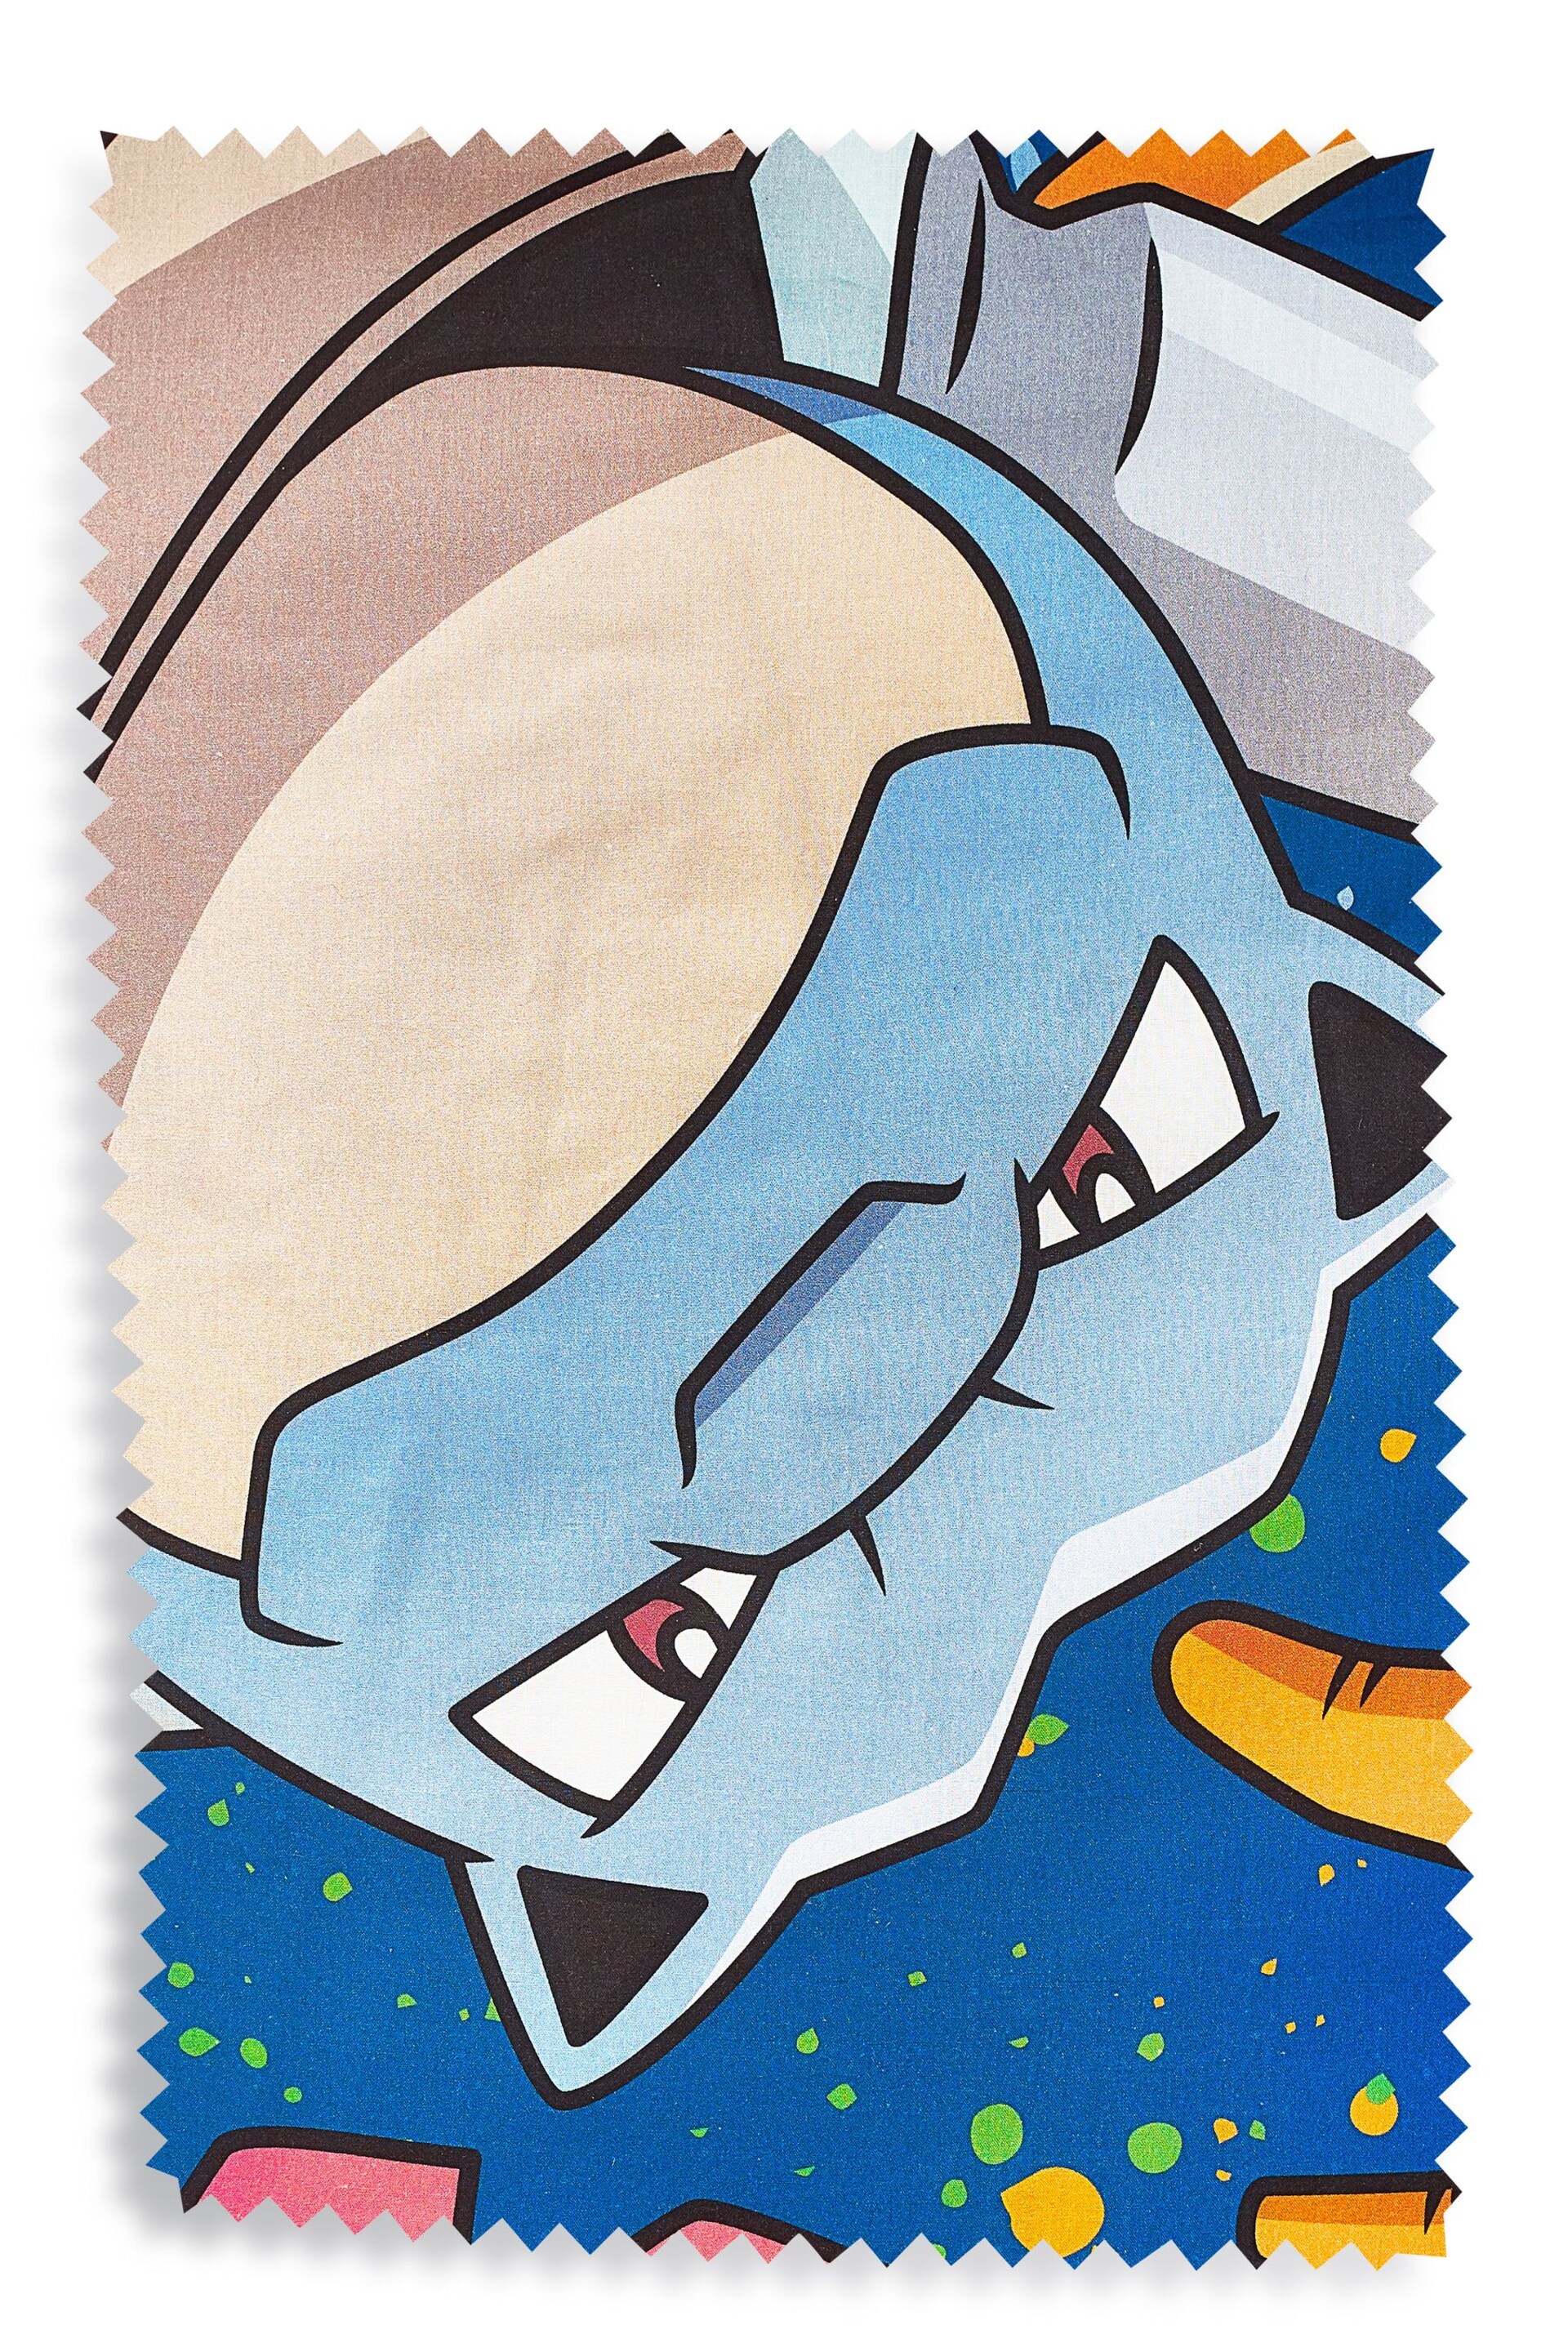 Pokémon Blue Reversible 100% Cotton Duvet Cover And Pillowcase Set - Image 8 of 11